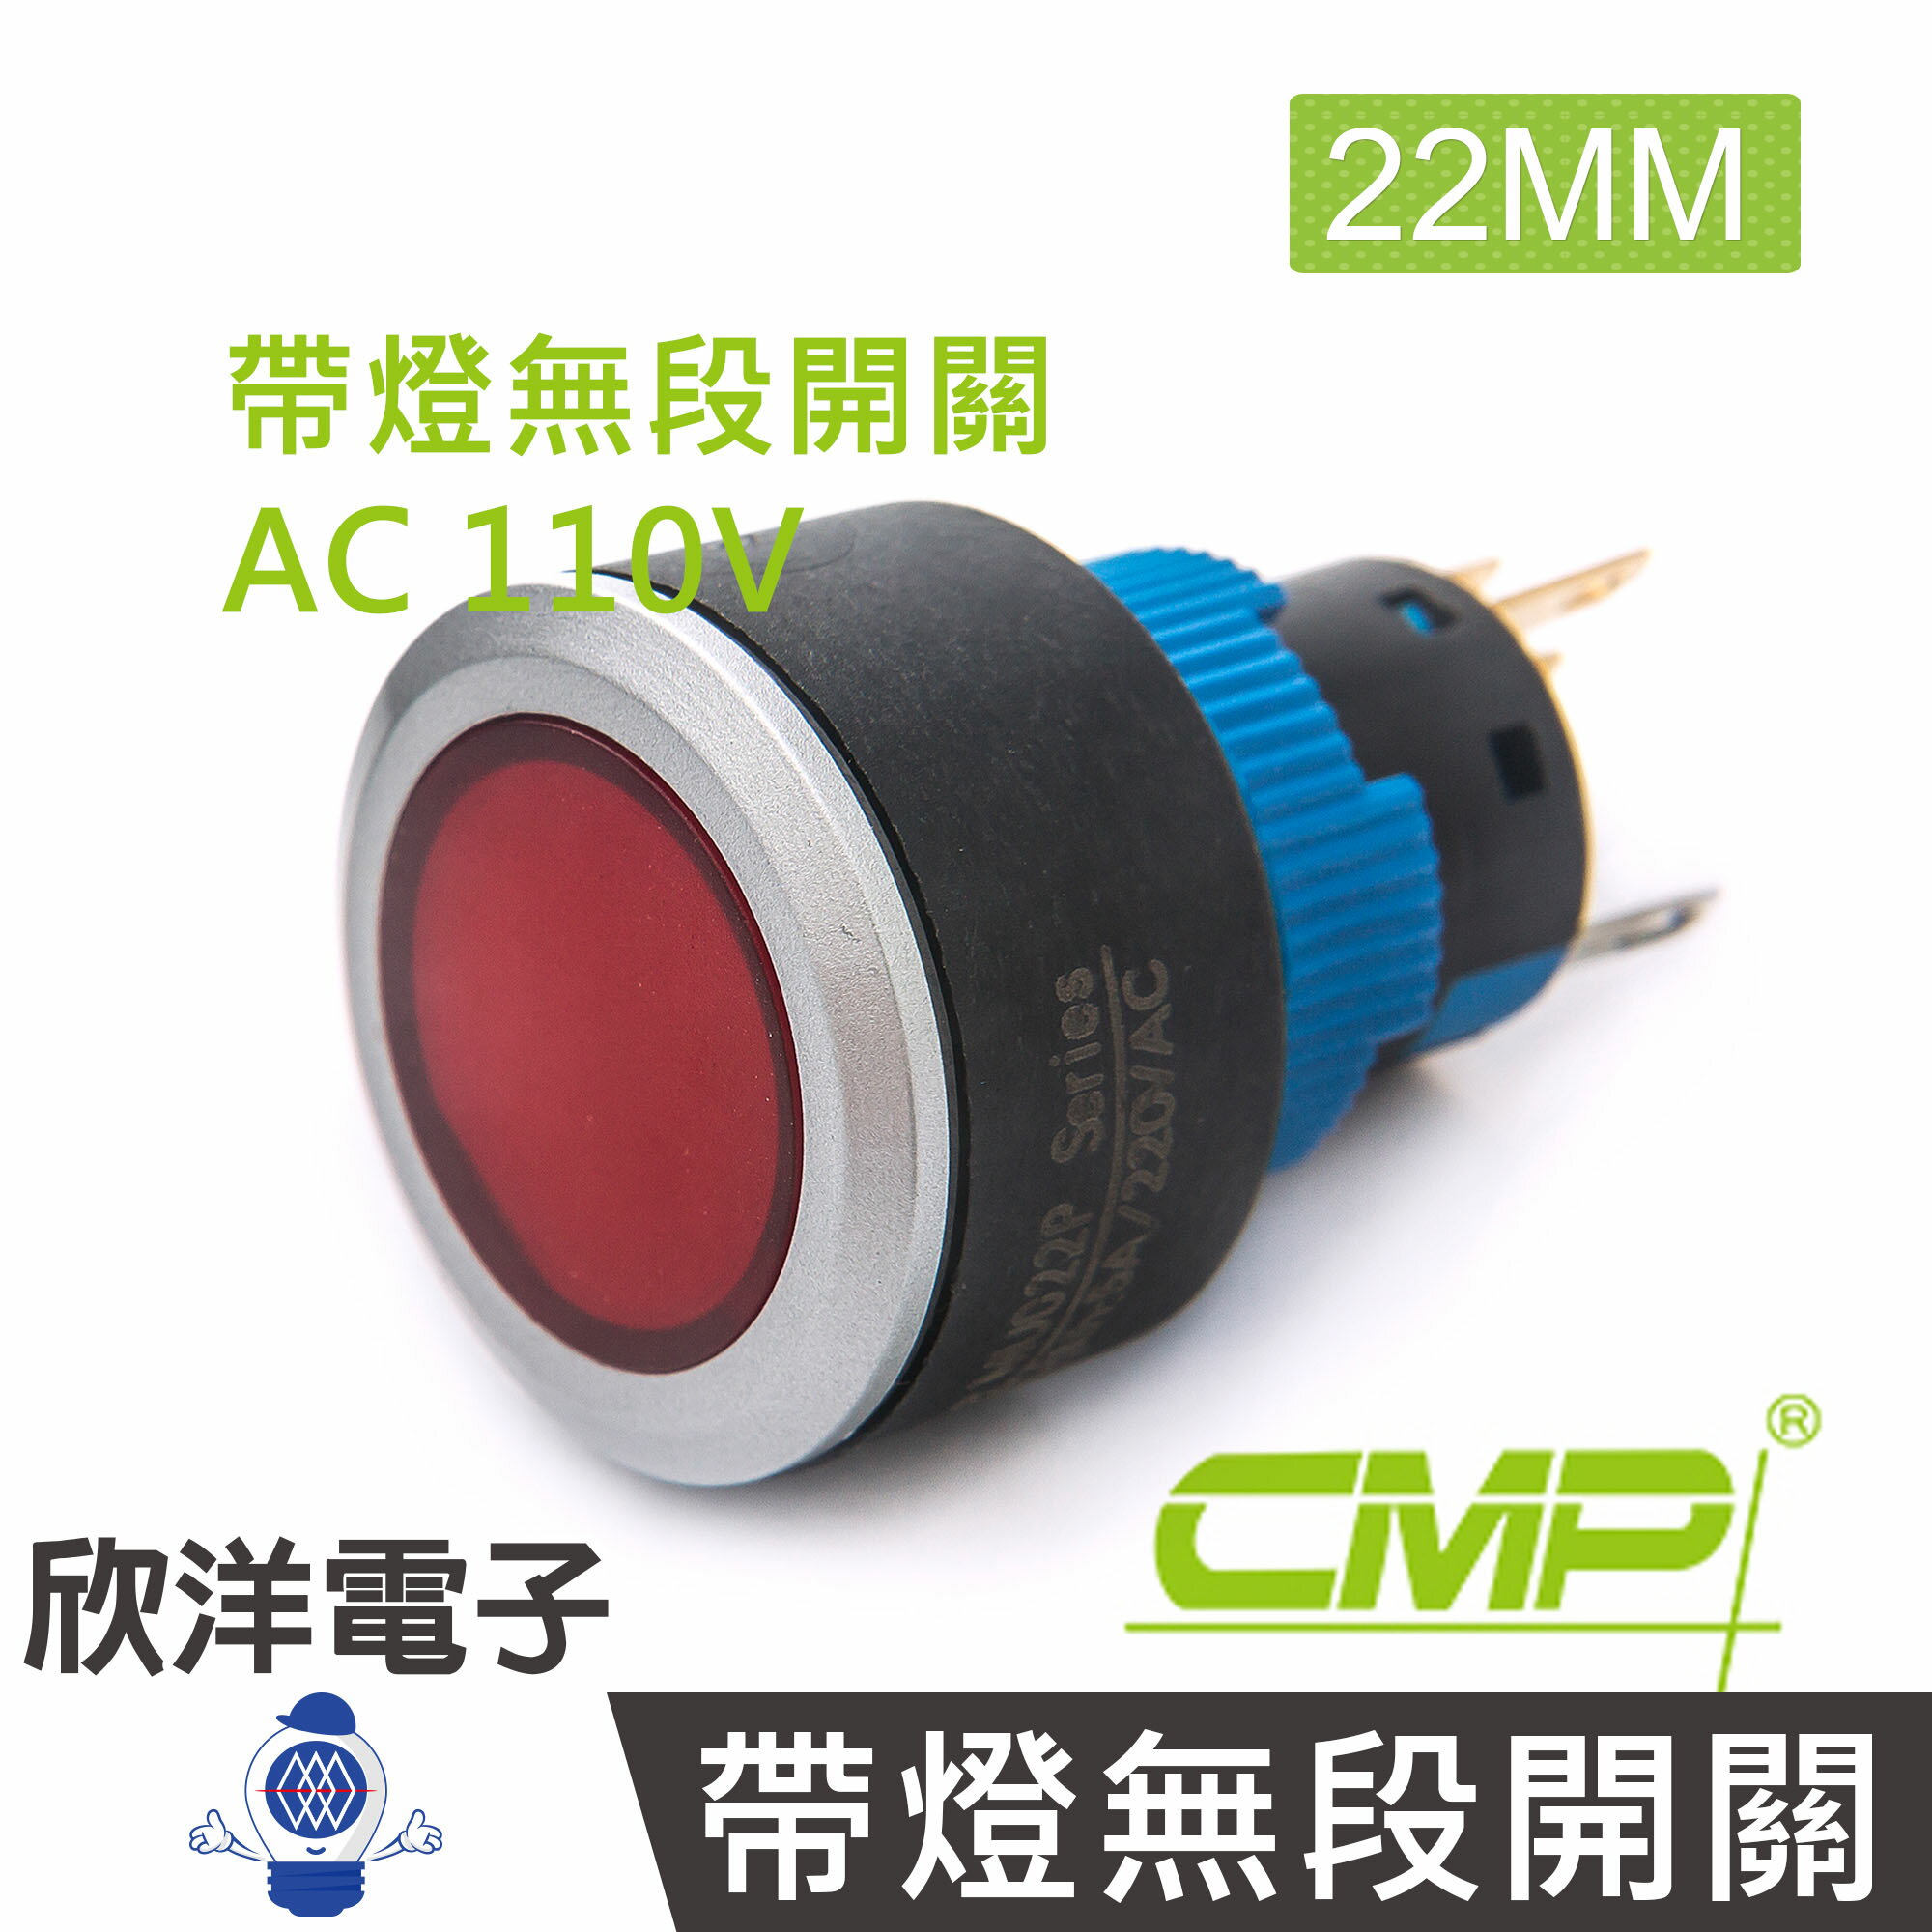 ※ 欣洋電子 ※ 22mm仿金屬塑料帶燈無段開關AC110V / P2202A-110V 藍、綠、紅、白、橙 五色光自由選購/ CMP西普